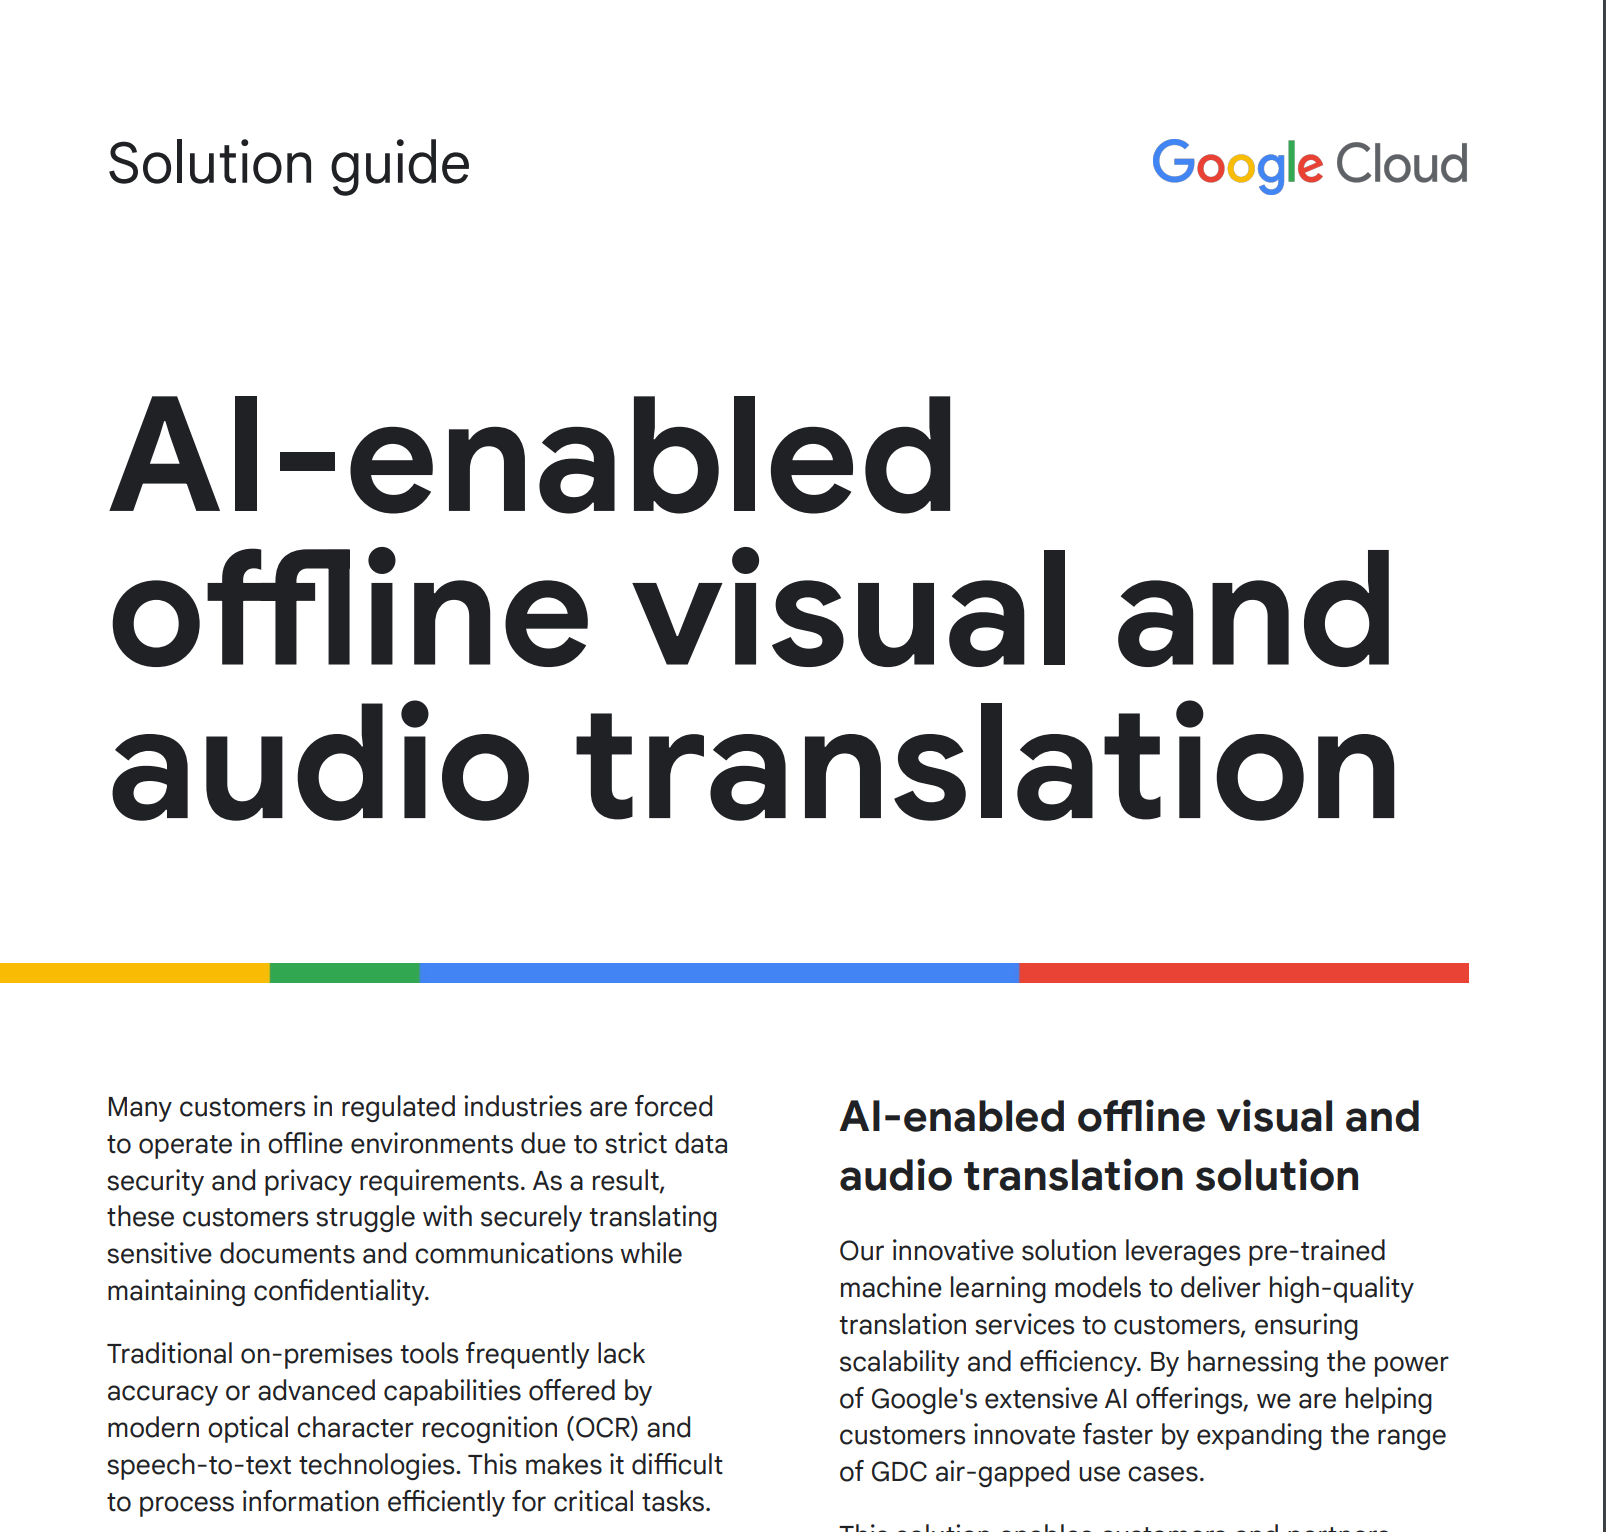 Guide de solution pour la traduction audiovisuelle hors connexion basée sur l'IA